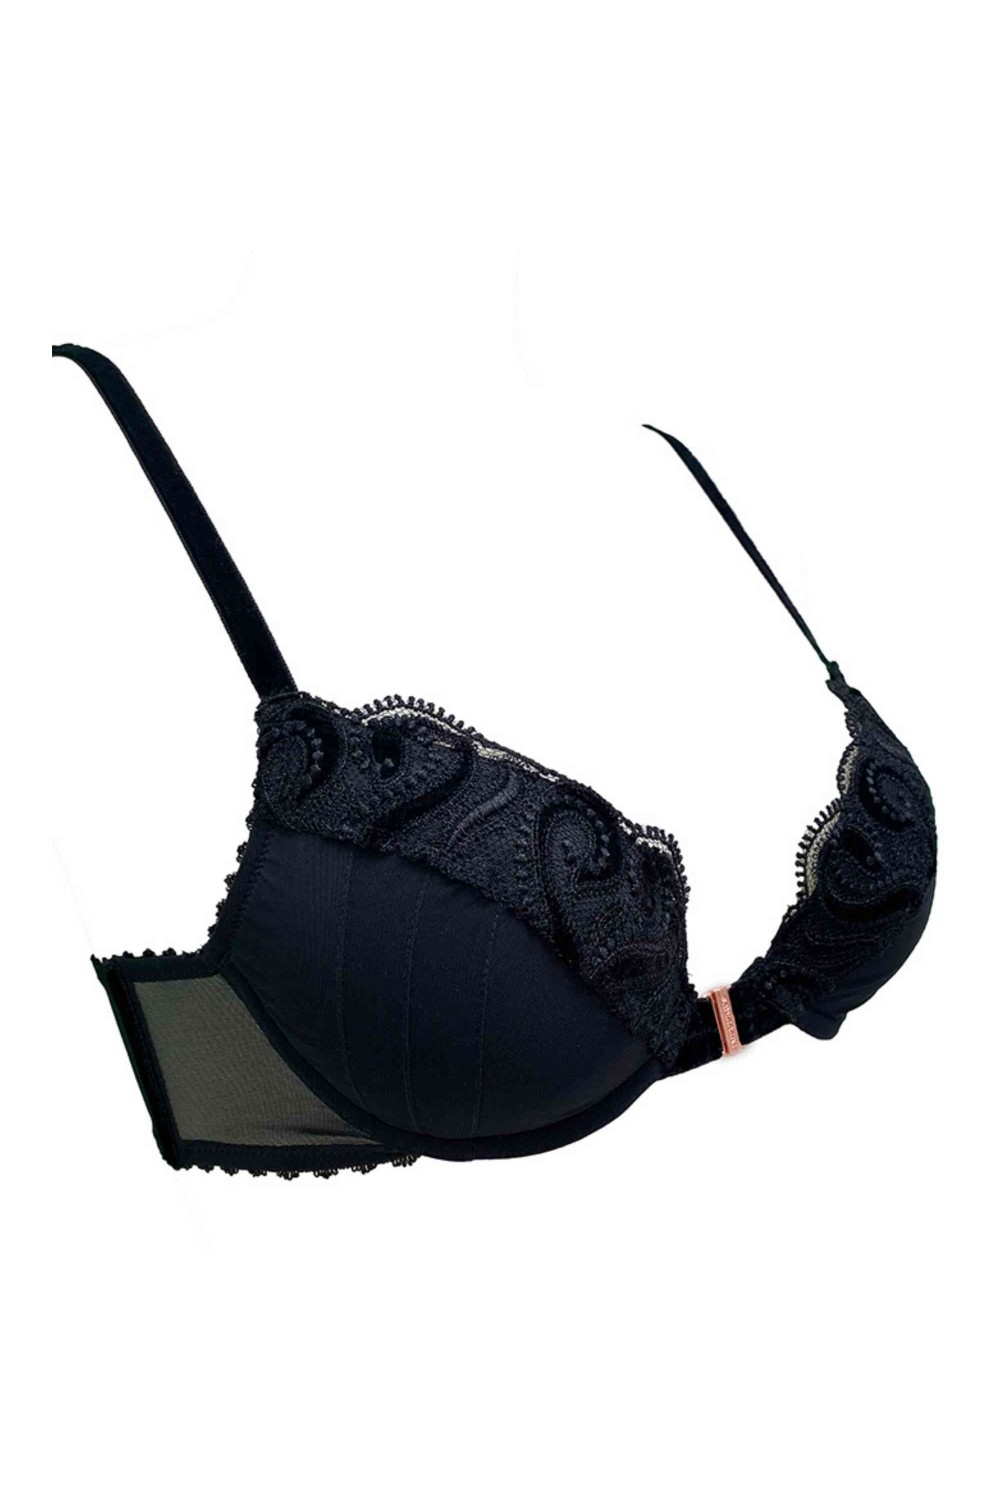 Cruella push-up bra - Luxury Lingerie – Impudique Official Website